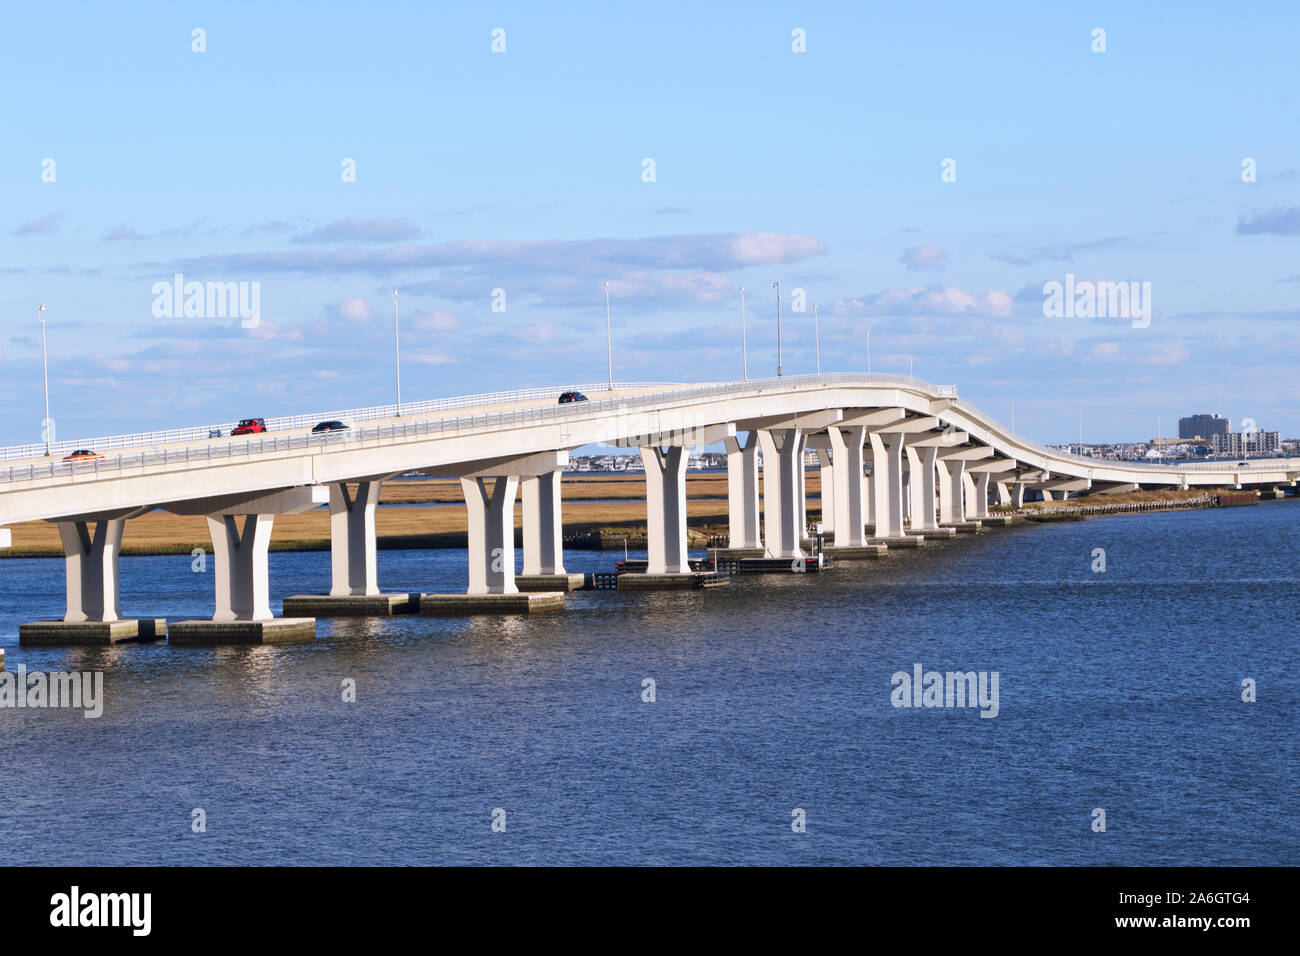 El Ocean City, Nueva Jersey puente Causeway Foto de stock